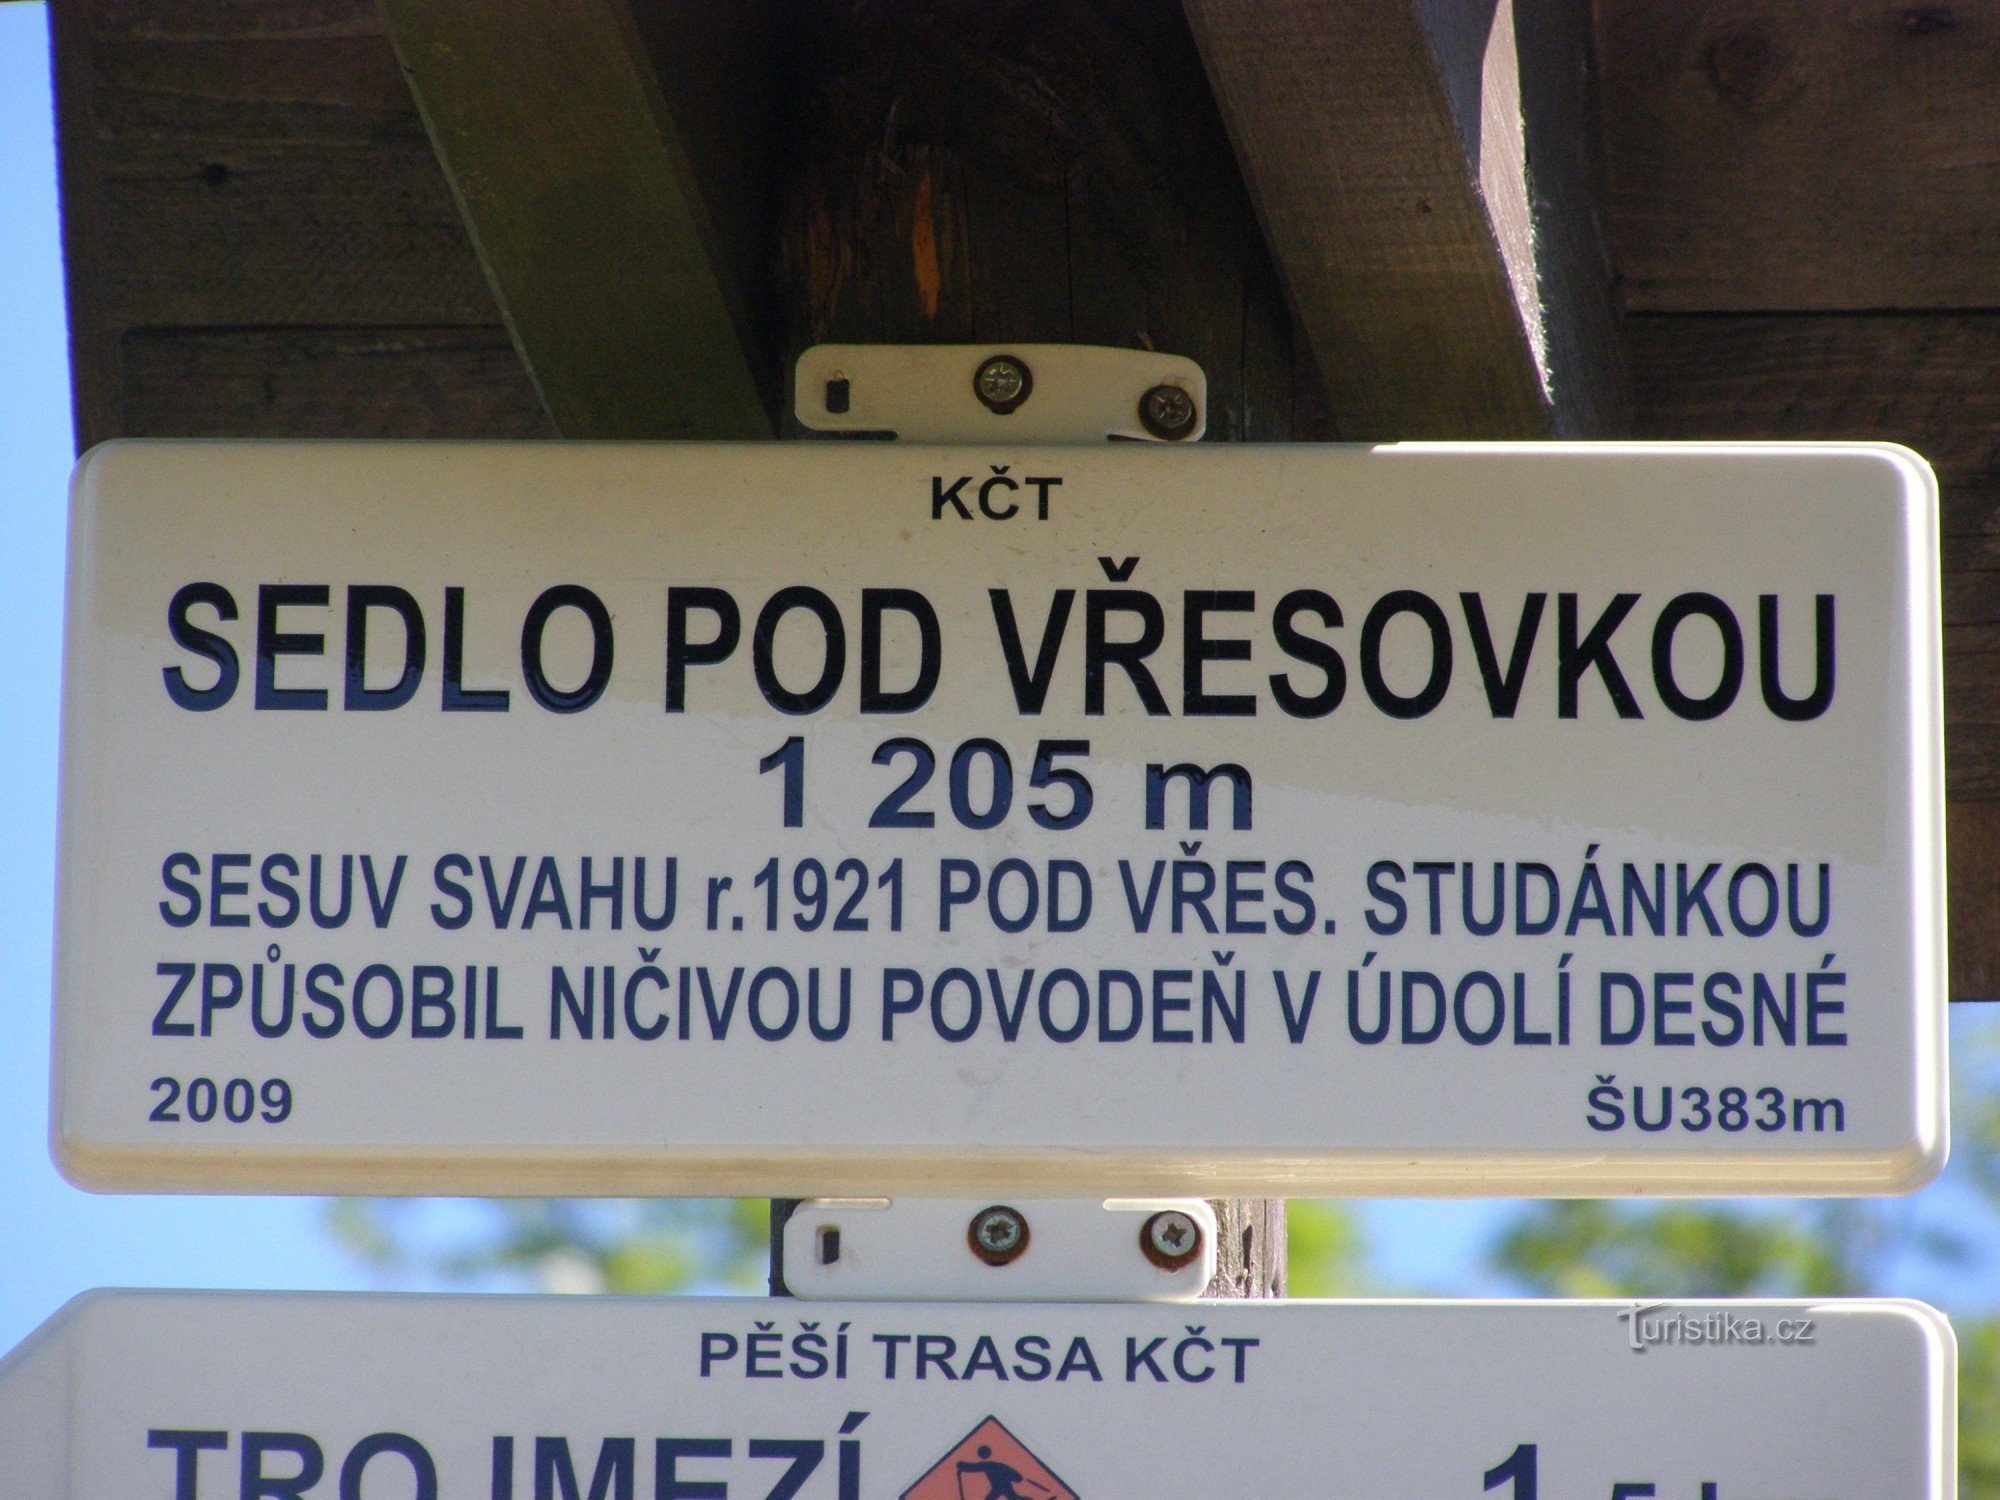 τουριστικό σταυροδρόμι - σέλα Pod Vřesovkou